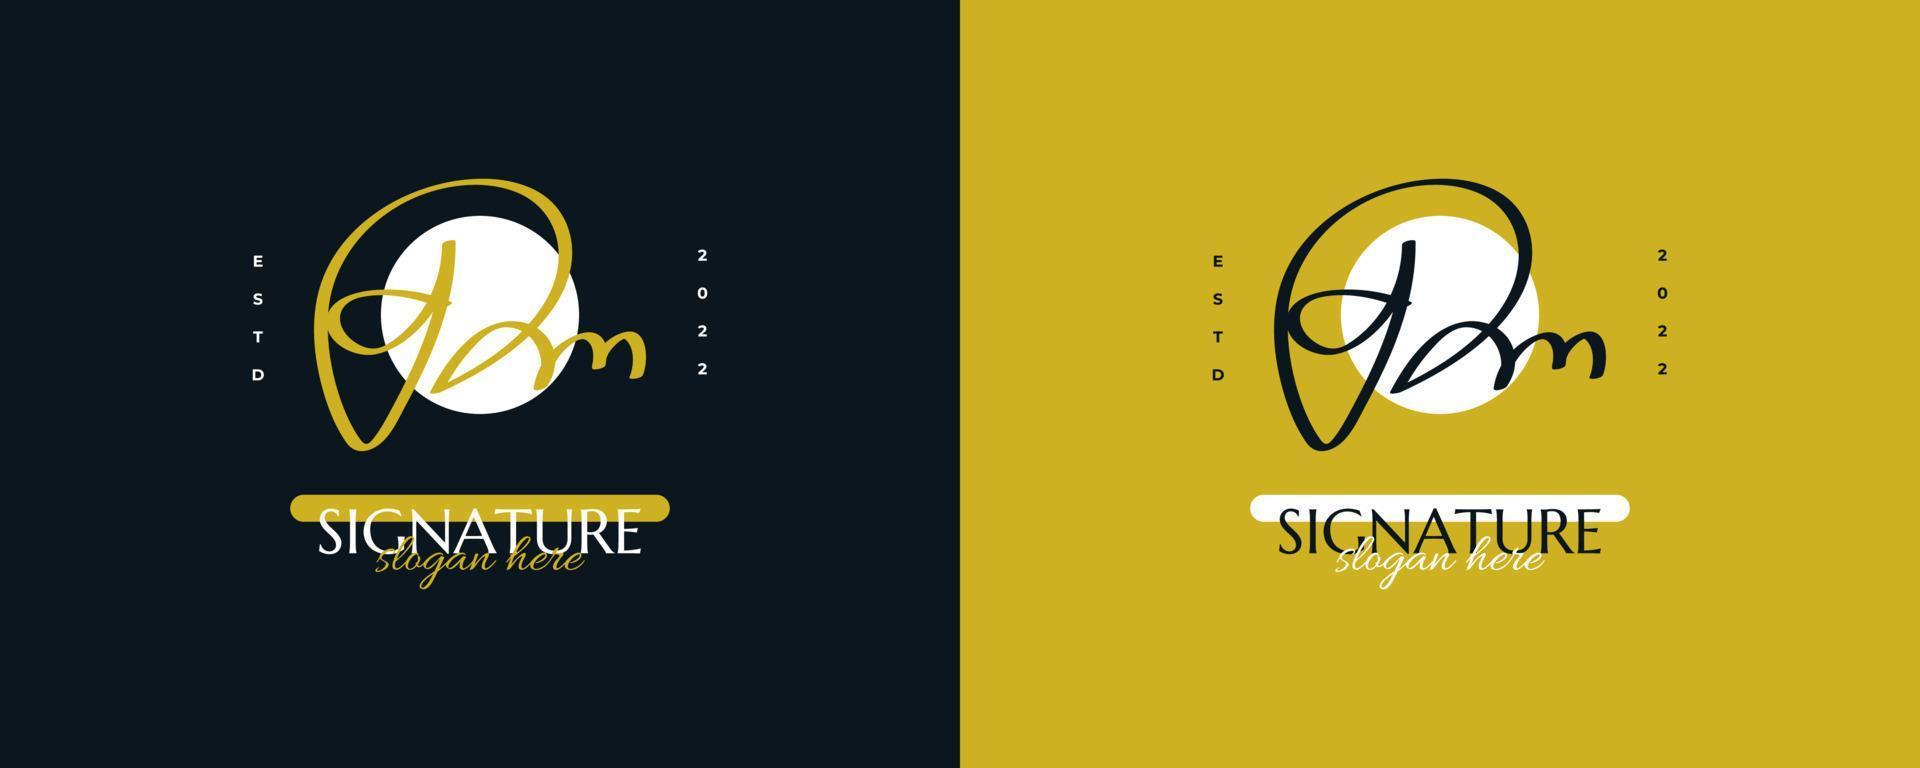 design de logotipo inicial d e m com estilo de caligrafia elegante e minimalista. logotipo ou símbolo de assinatura dm para casamento, moda, joias, boutique e identidade comercial vetor